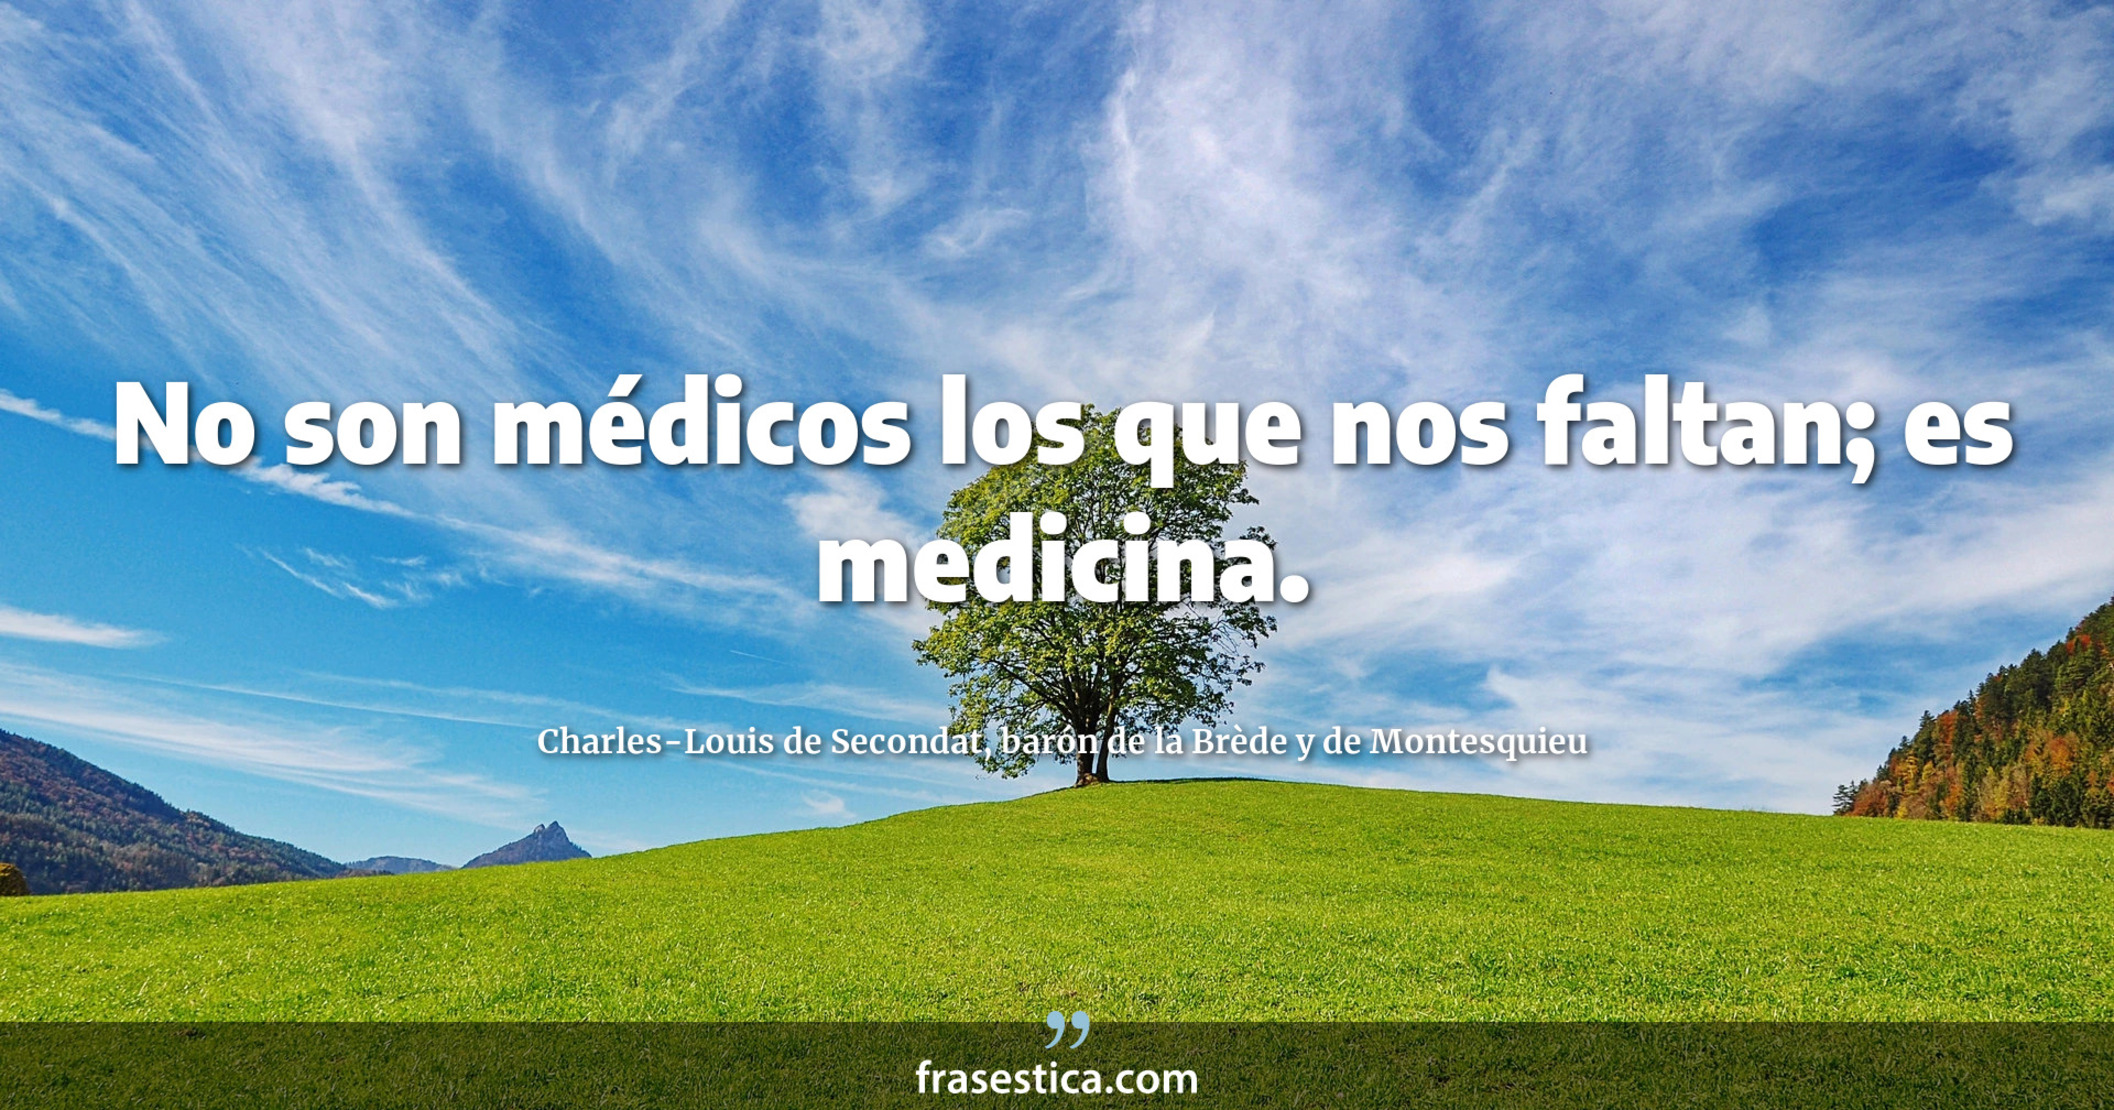 No son médicos los que nos faltan; es medicina. - Charles-Louis de Secondat, barón de la Brède y de Montesquieu